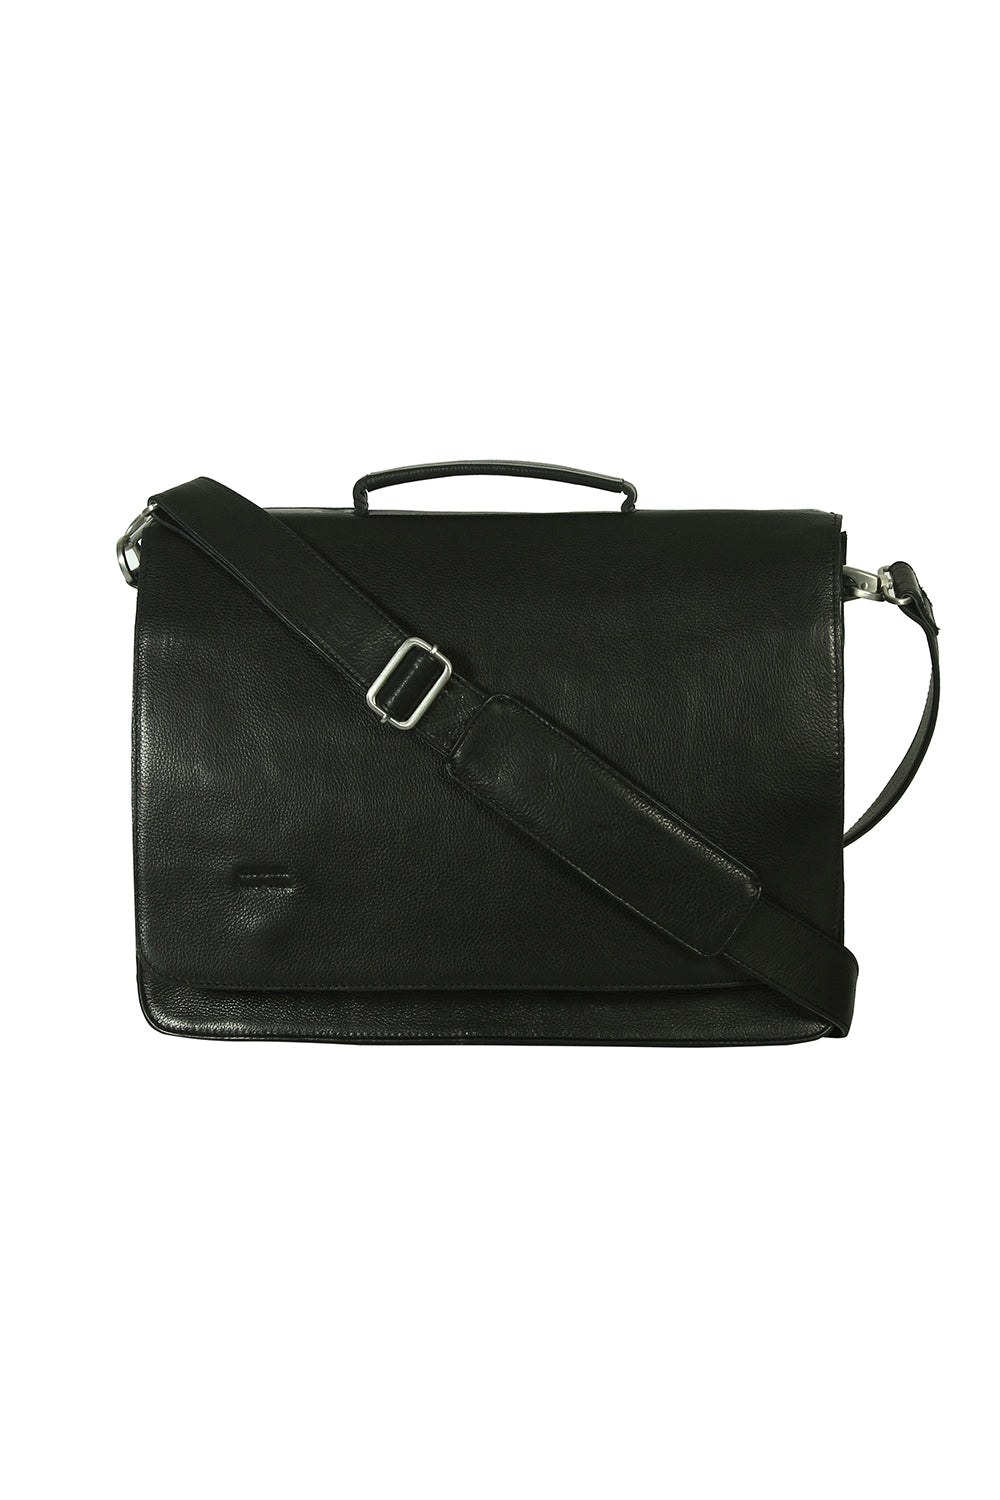 Paris classic laptop/ briefcase bag